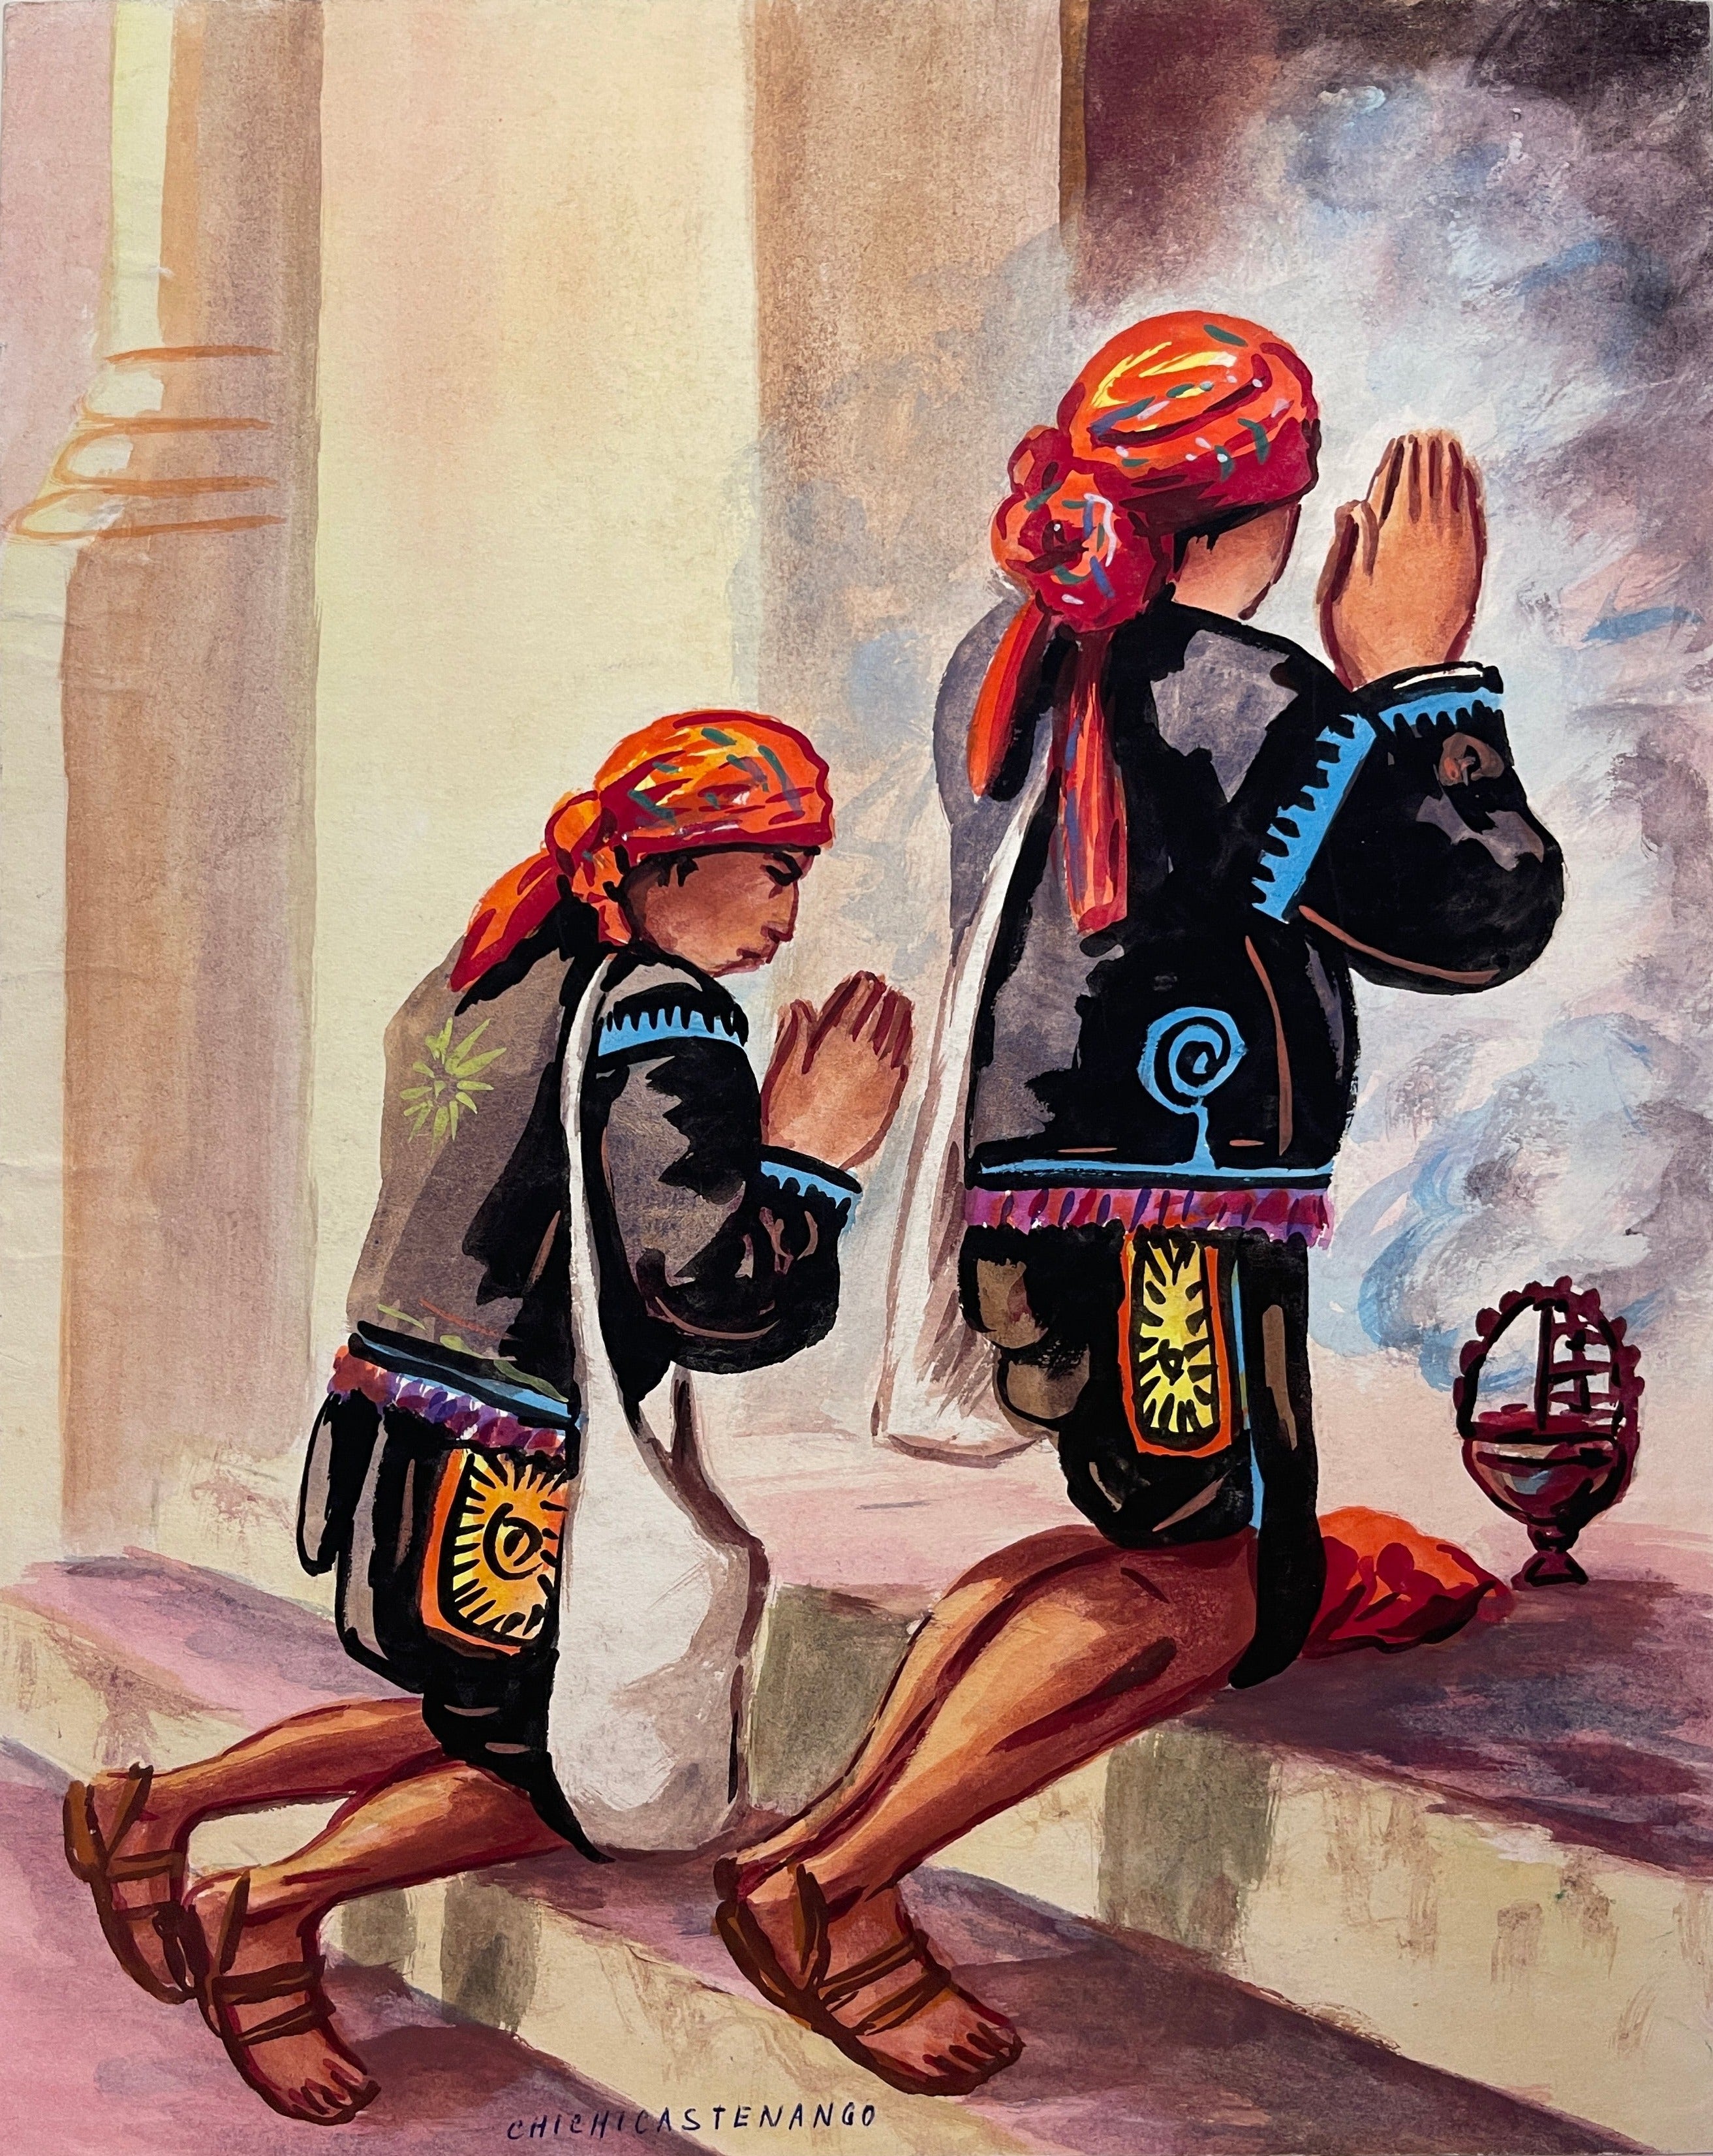 Maria Navas 1950 Signed Watercolor Painting - 2 Mayan People Praying at Adirondack Retro